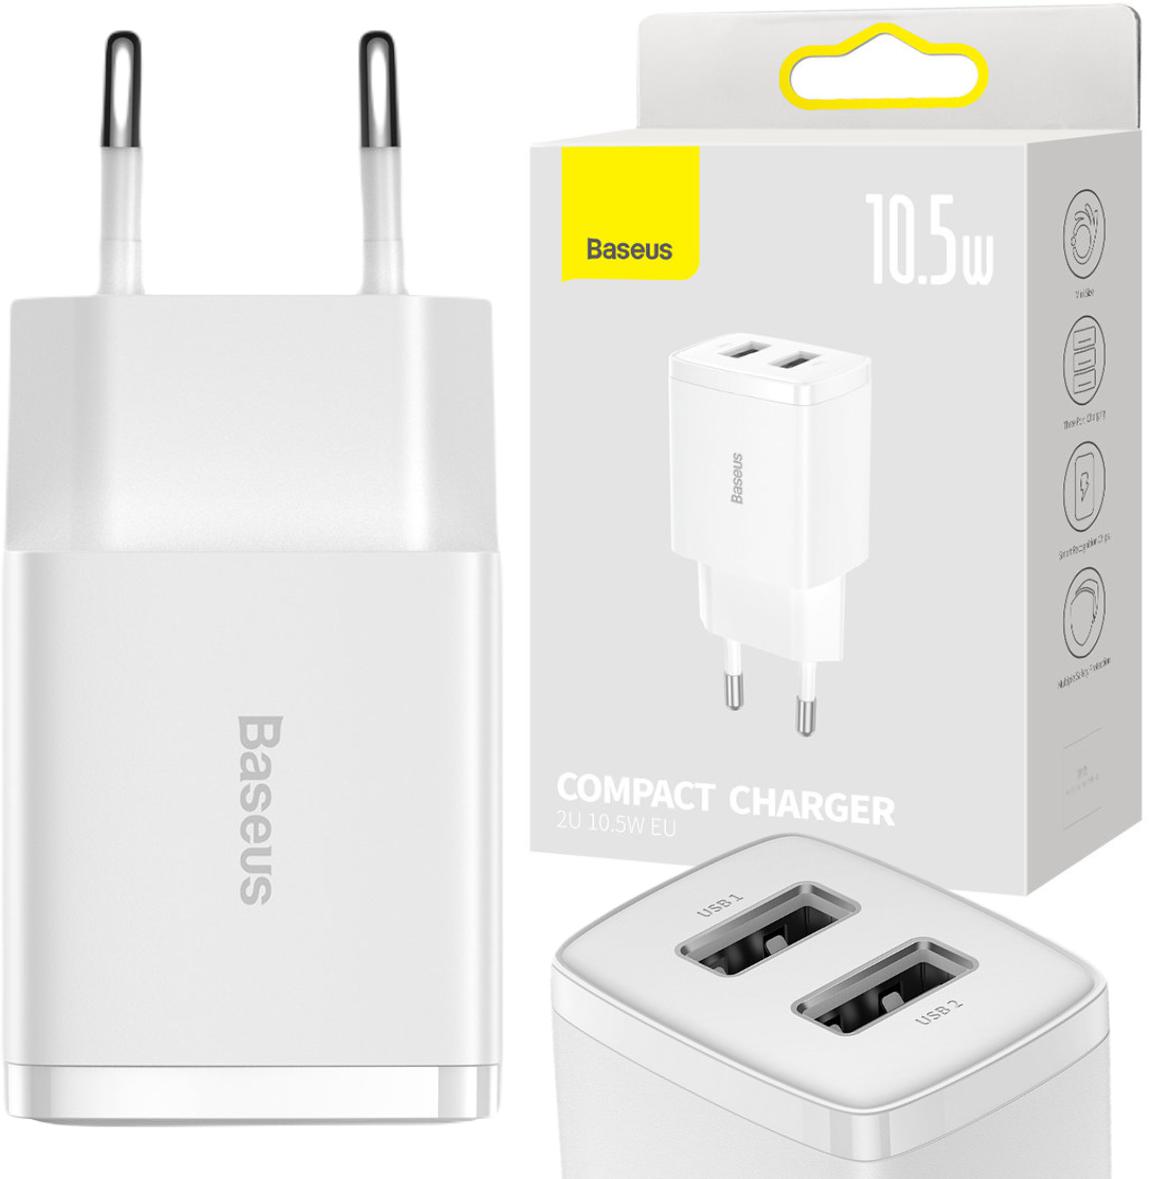 Baseus Compact biała ładowarka sieciowa 2x USB 10.5 W CCXJ010202 – najważniejsze cechy: